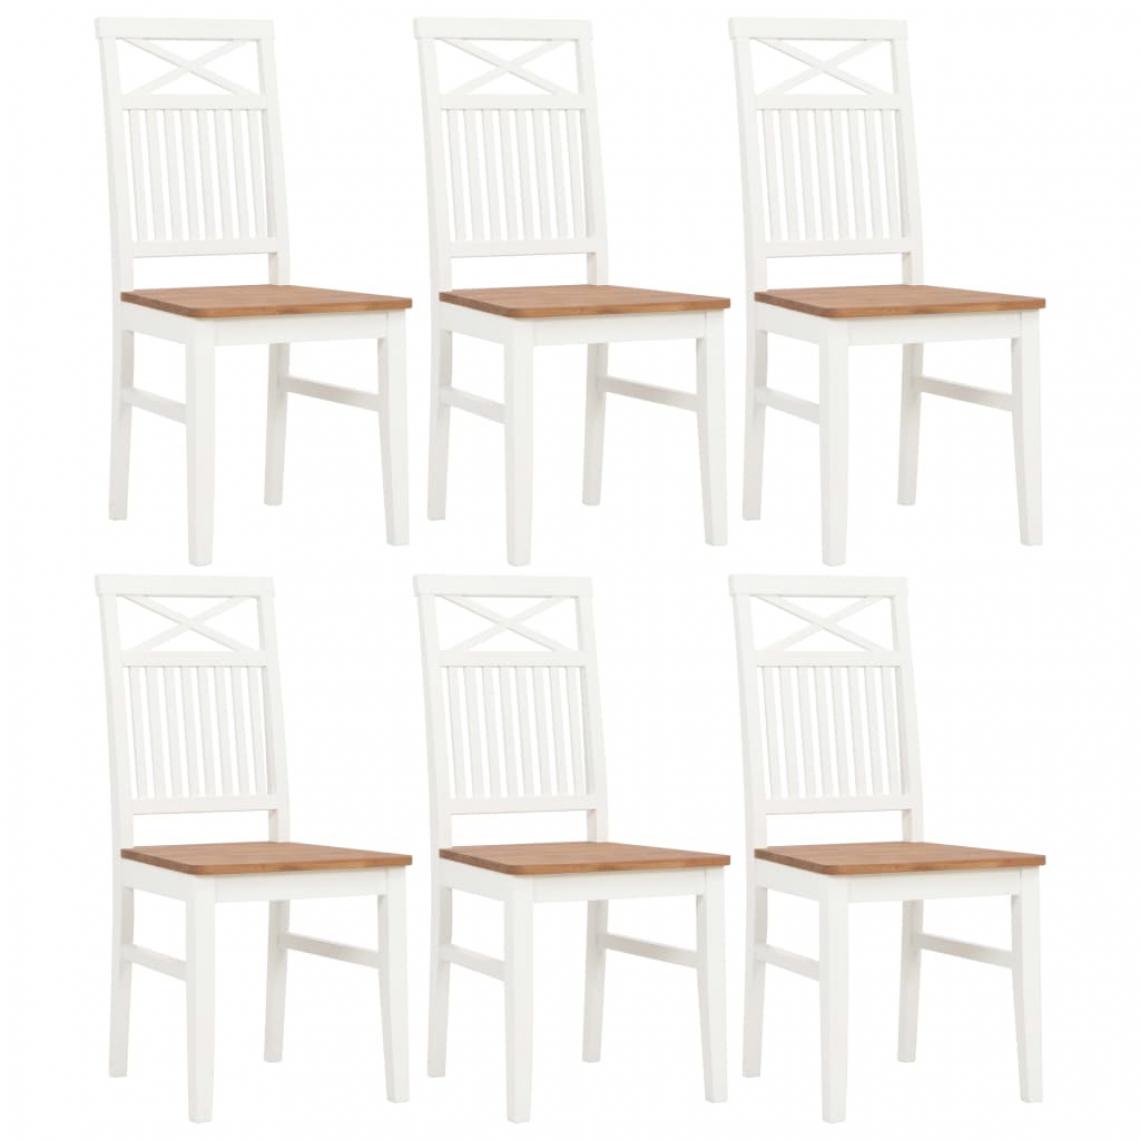 Icaverne - Distingué Fauteuils et chaises serie Oslo Chaises de salle à manger 6 pcs Blanc Bois de chêne solide - Chaises